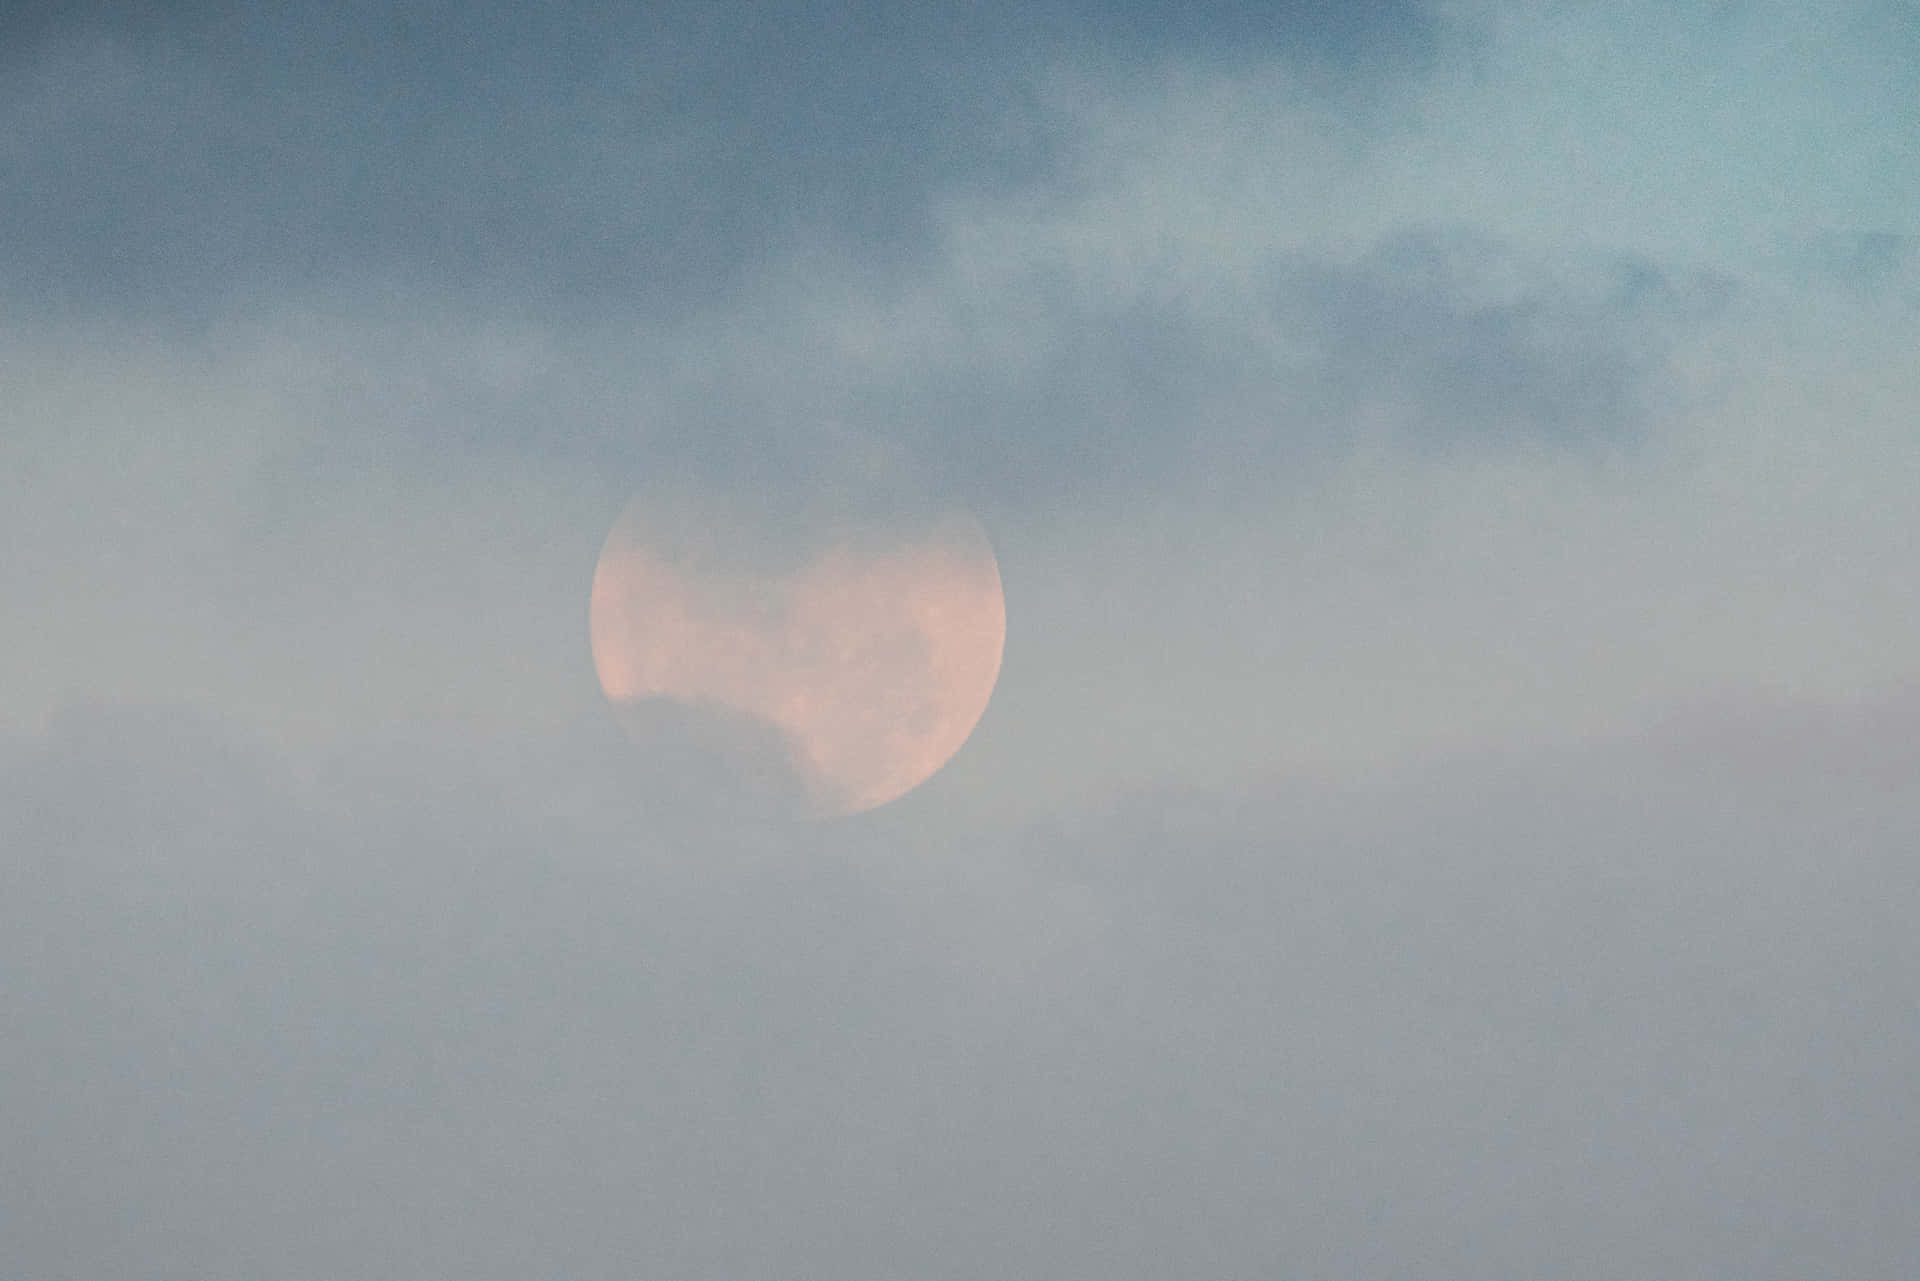 Imagende La Luna Detrás De Las Nubes.